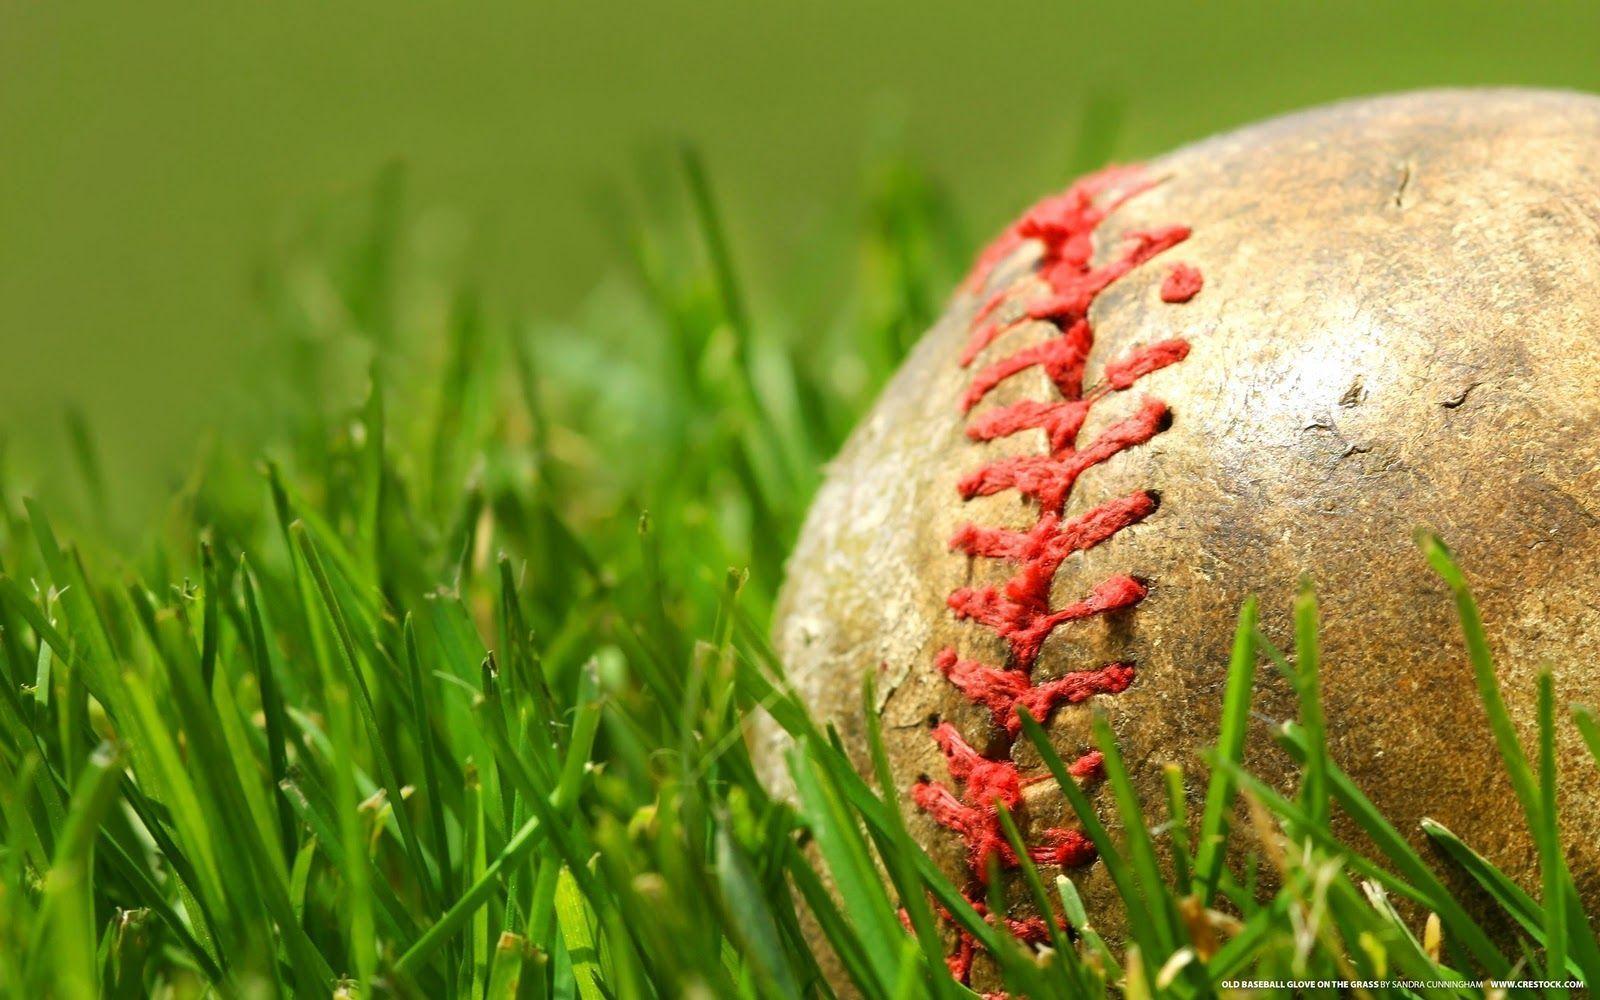 The Best Top Desktop Baseball Wallpaper 16 Ball In The Grass